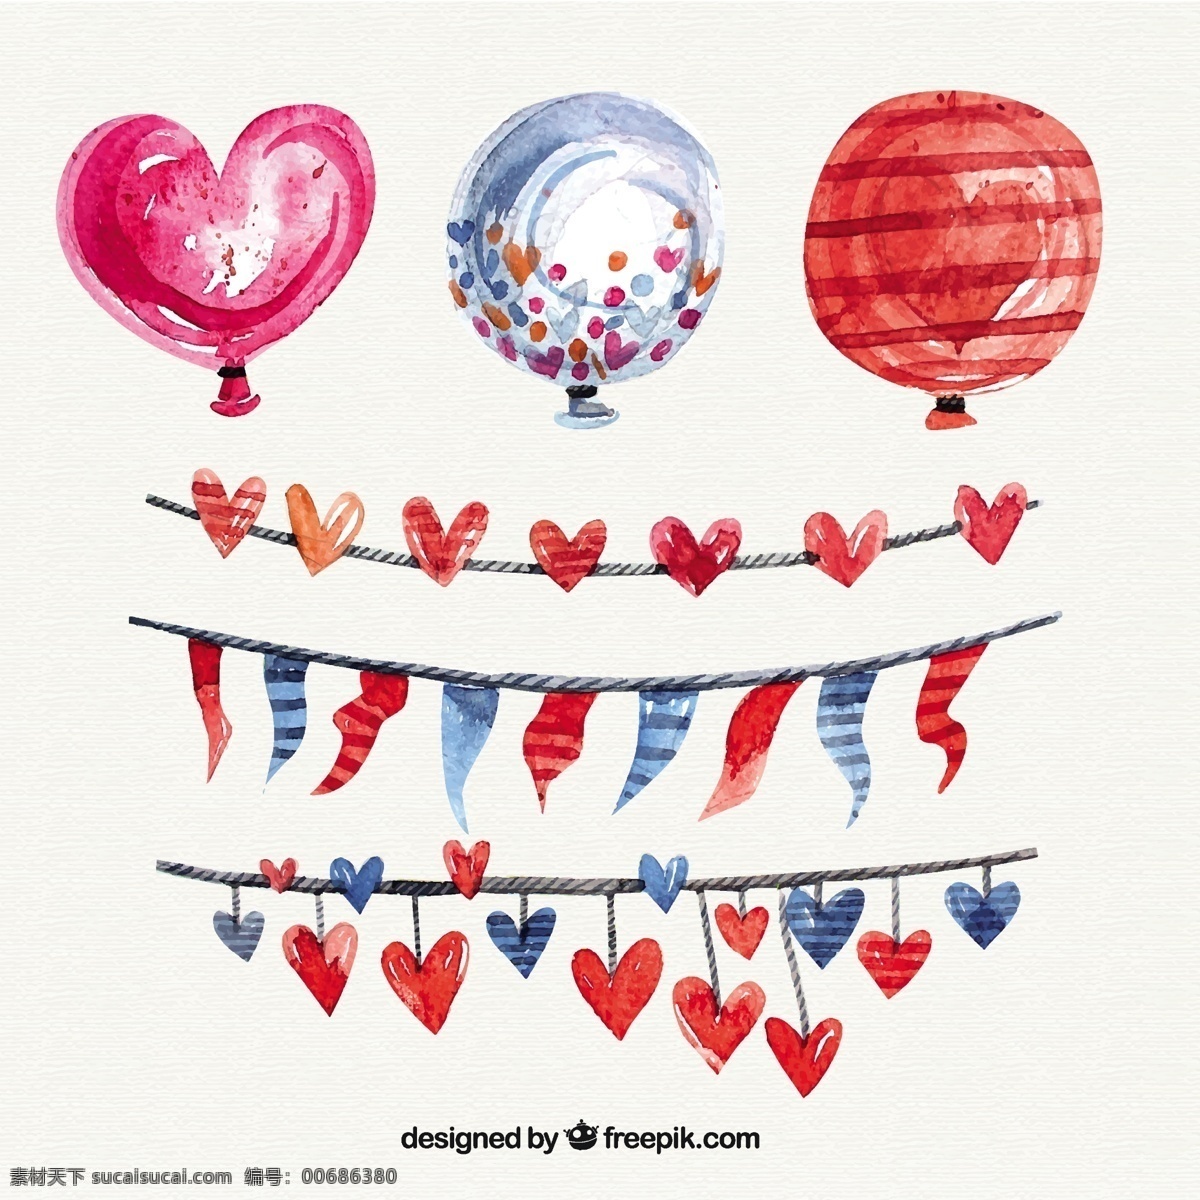 水彩画 心 气球 生日快乐 方 明星 一方面 标签 手绘的 可爱的 庆祝 高兴 糖果 帽子 花环 生日聚会 手绘